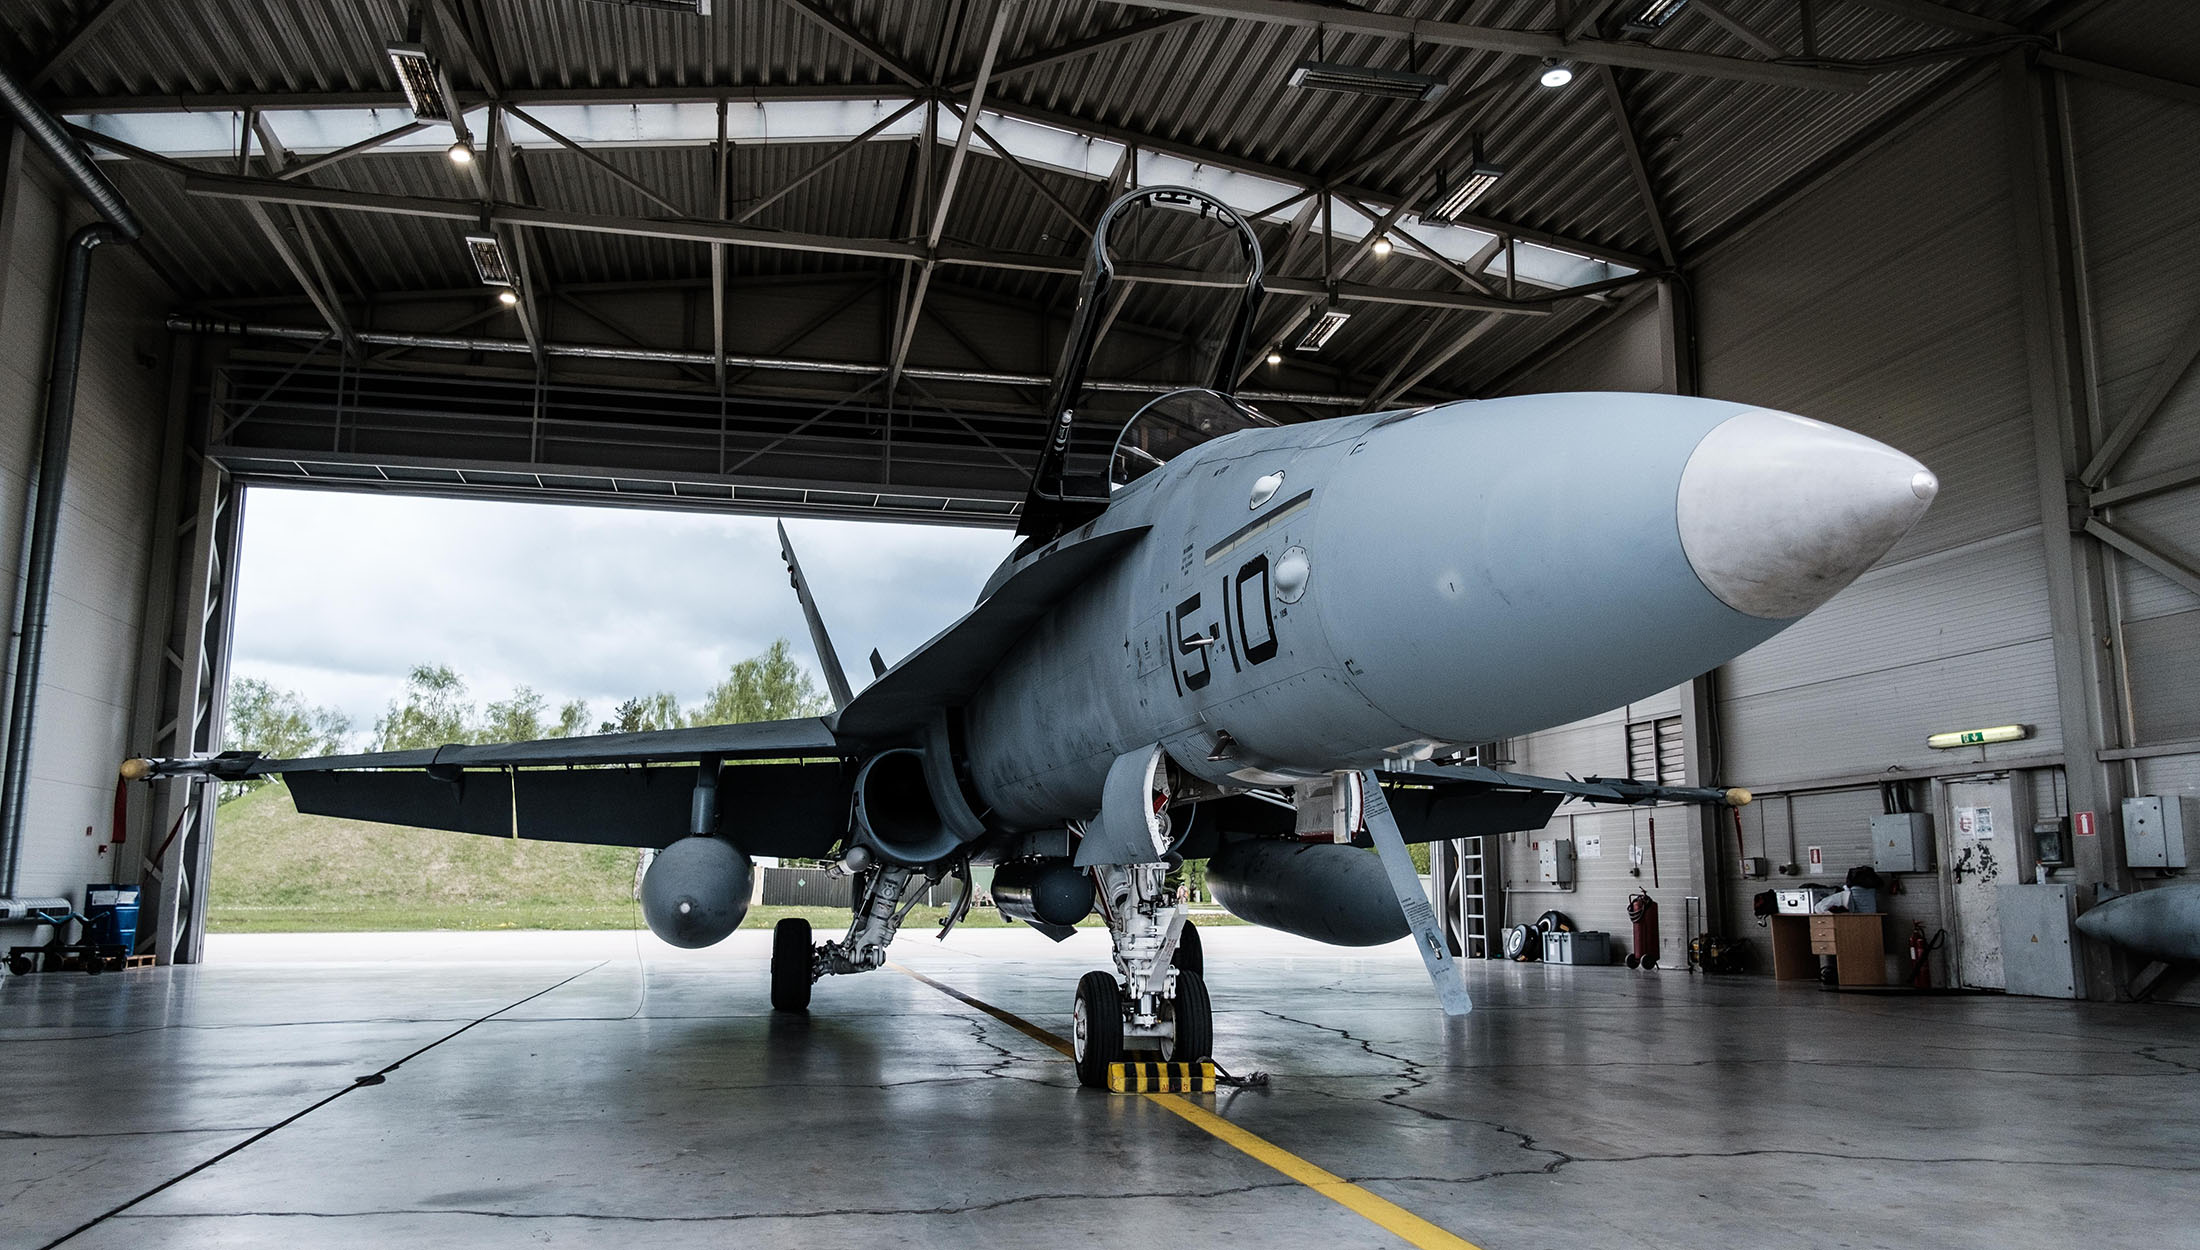 A Spanish Air Force F/A-18 Hornet waits in a hangar at Å iauliai Air Base in Lithuania.